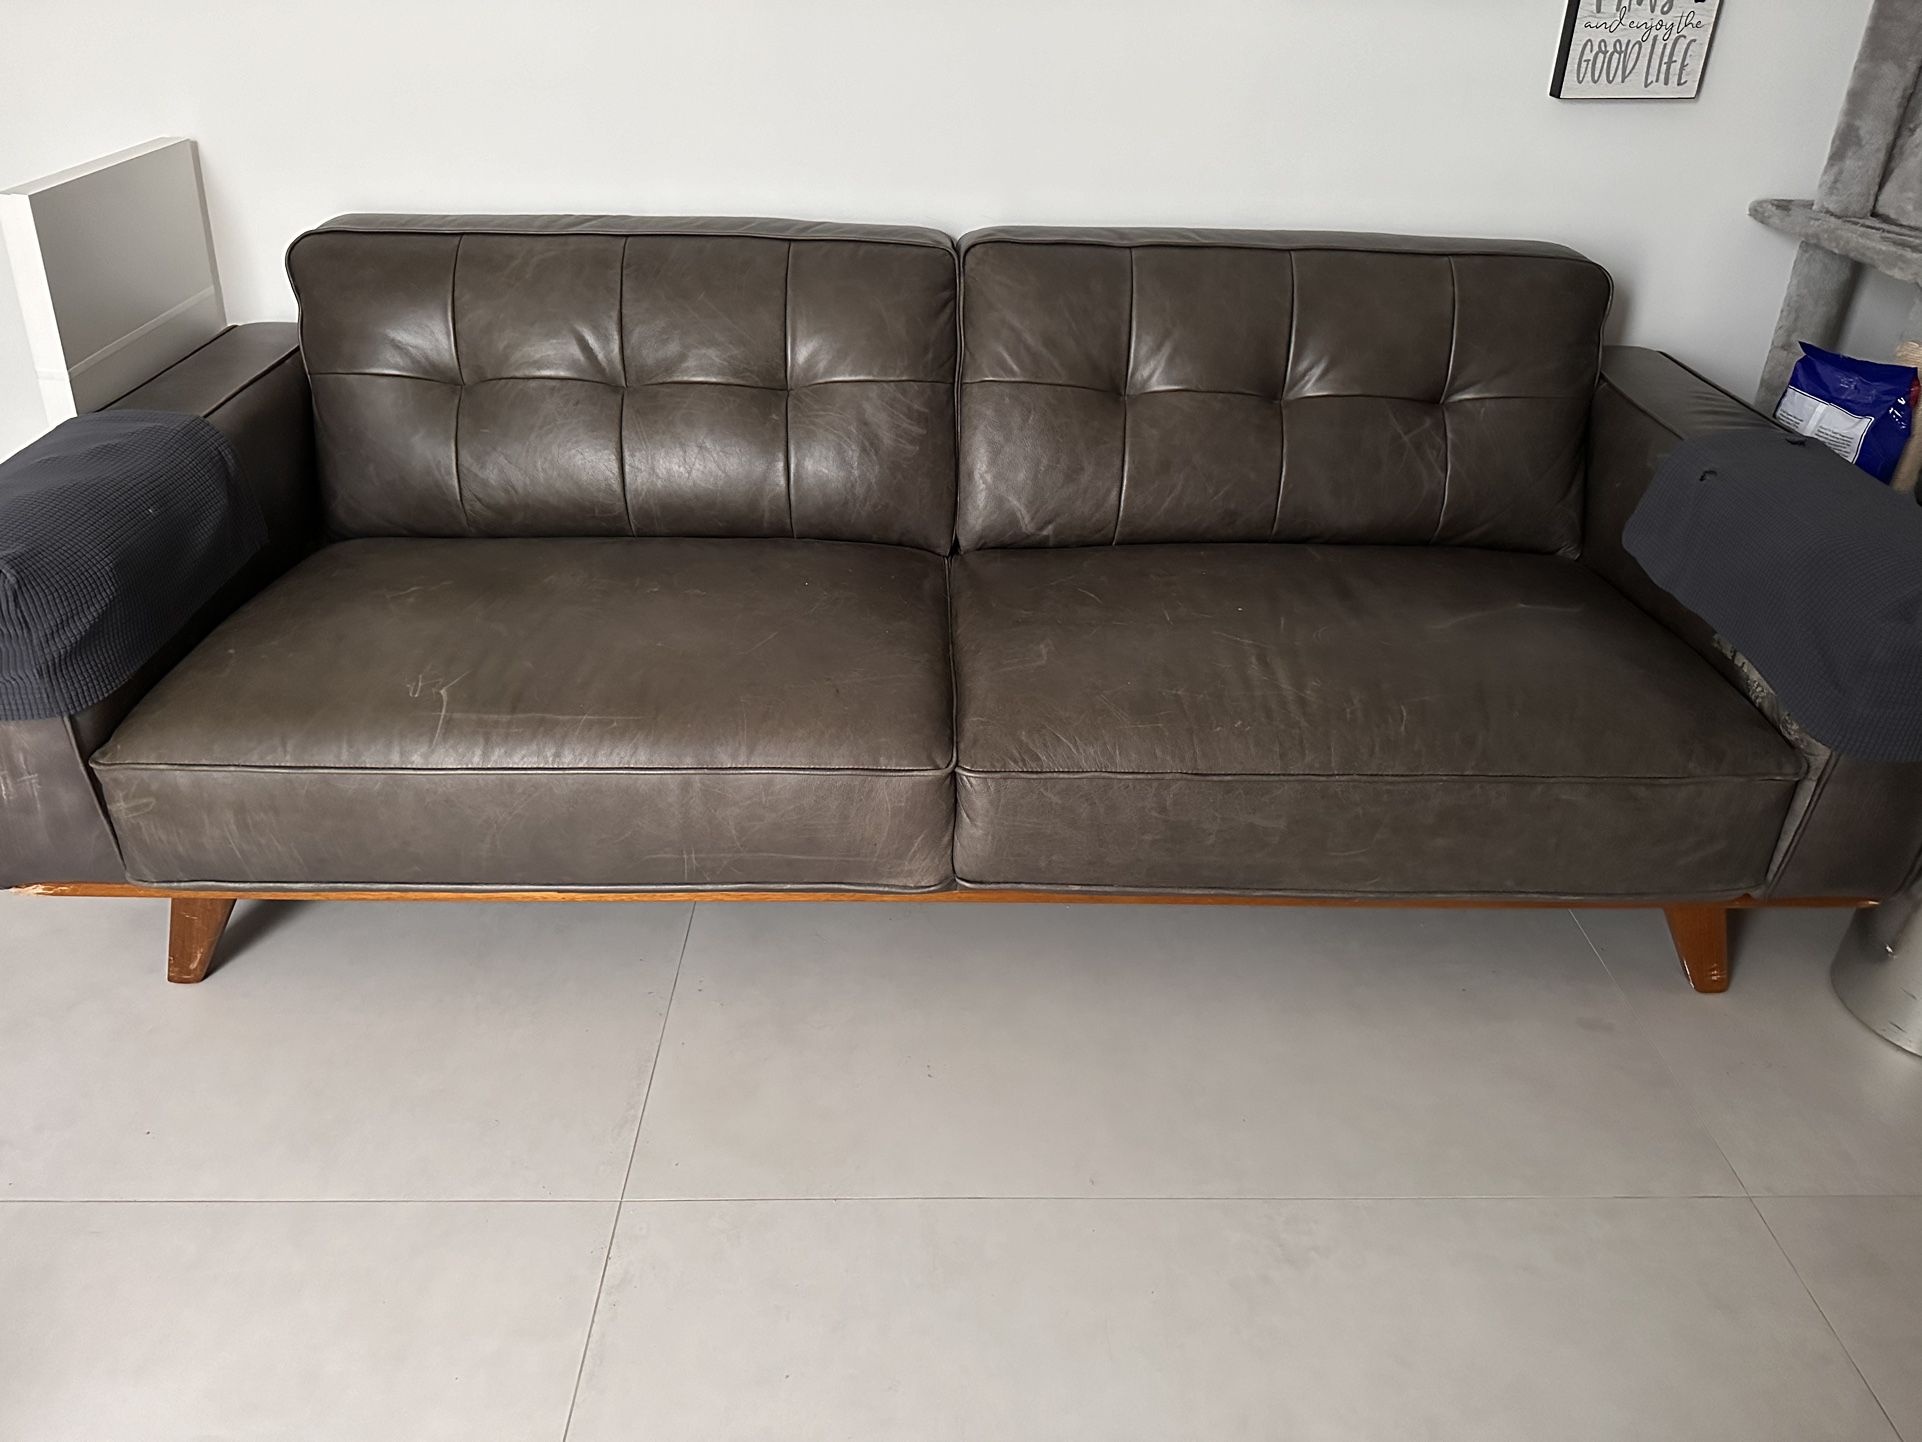 Leather sofa $50